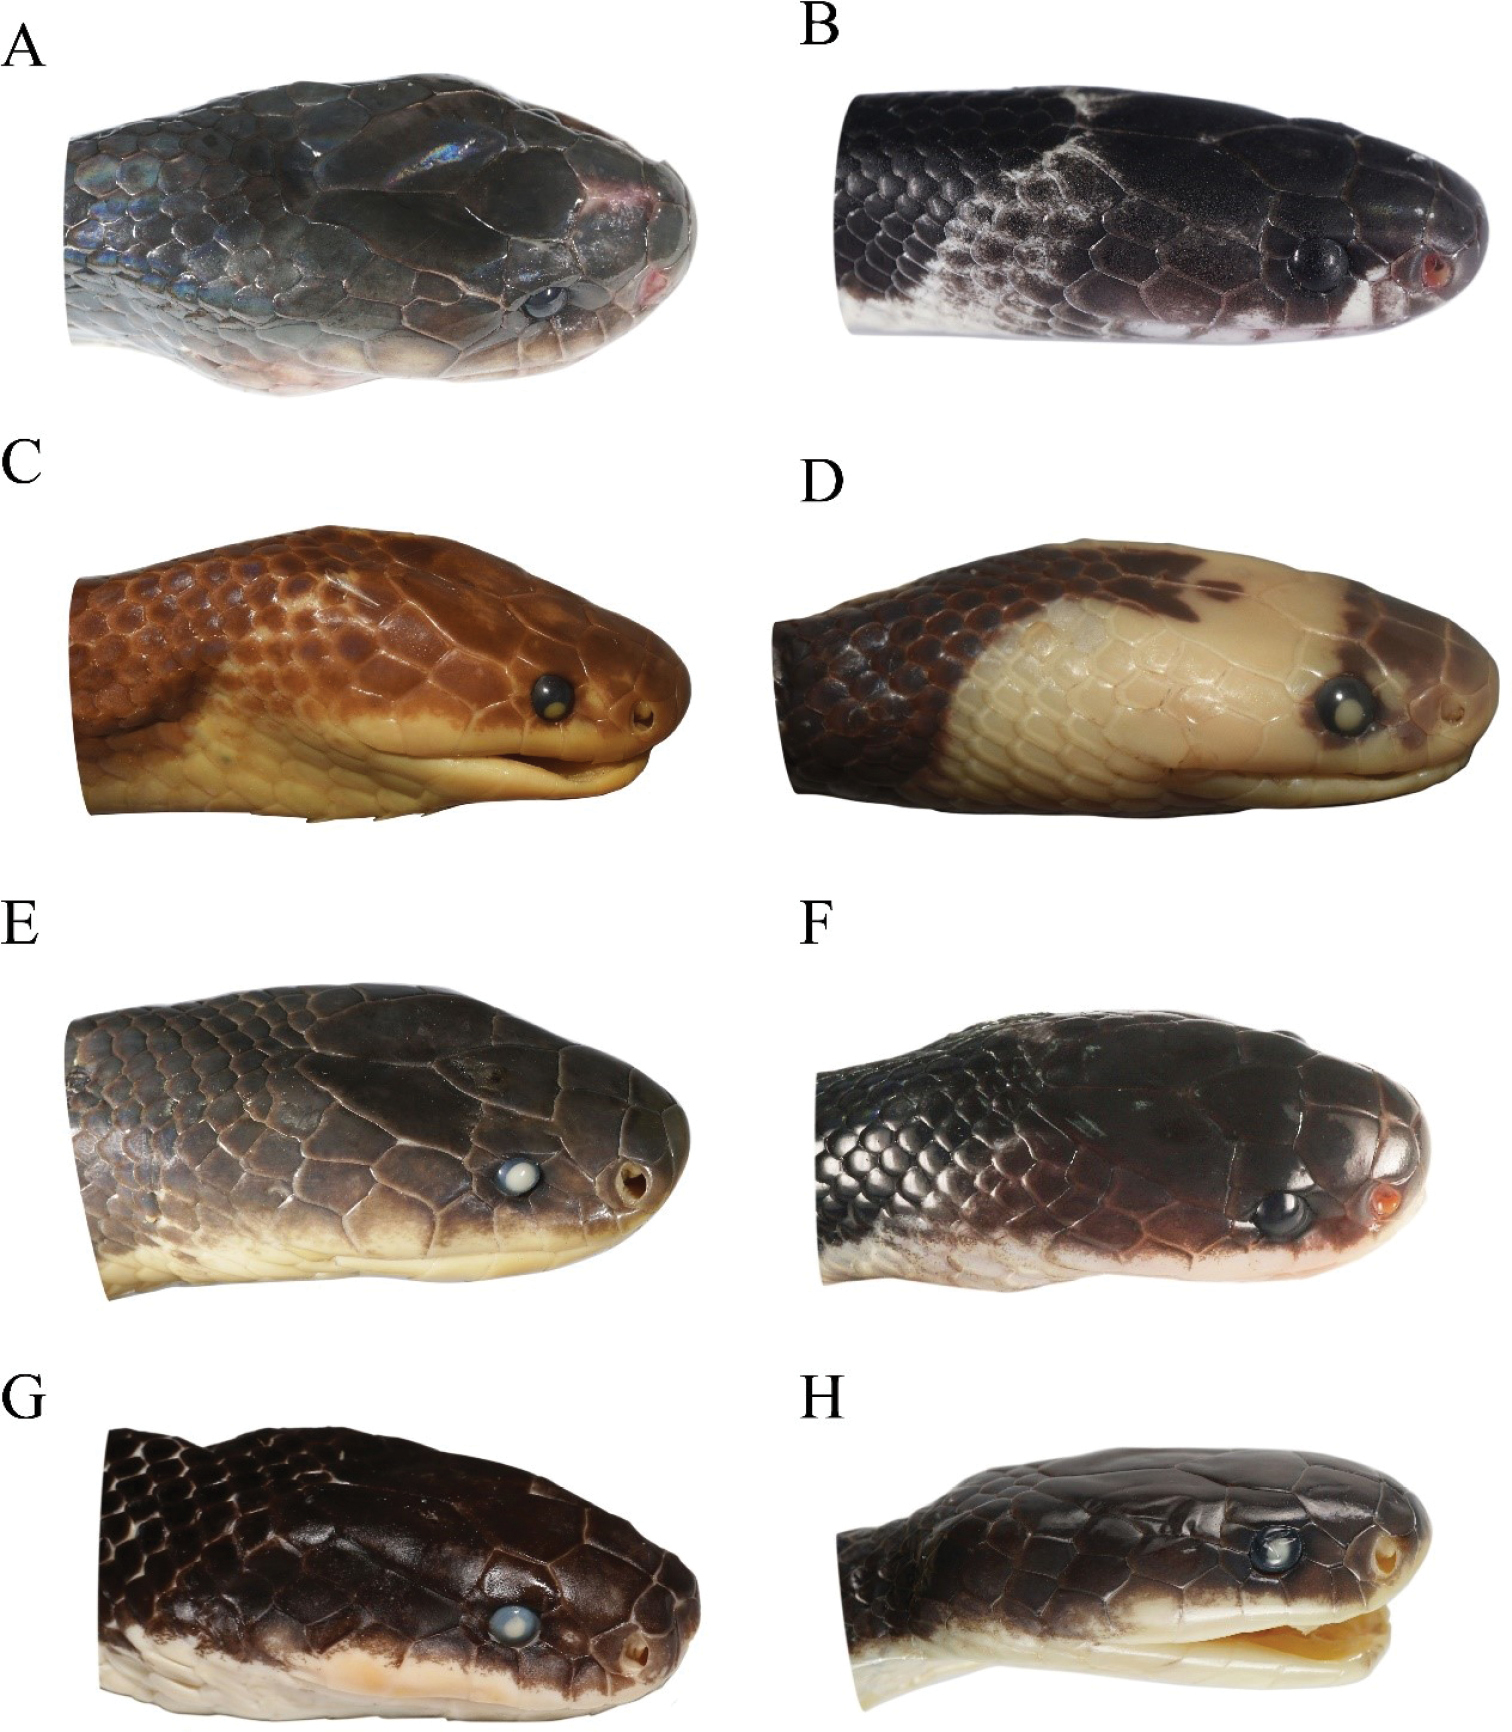 Krait de Suzhen: nueva serpiente altamente peligrosa descubierta.